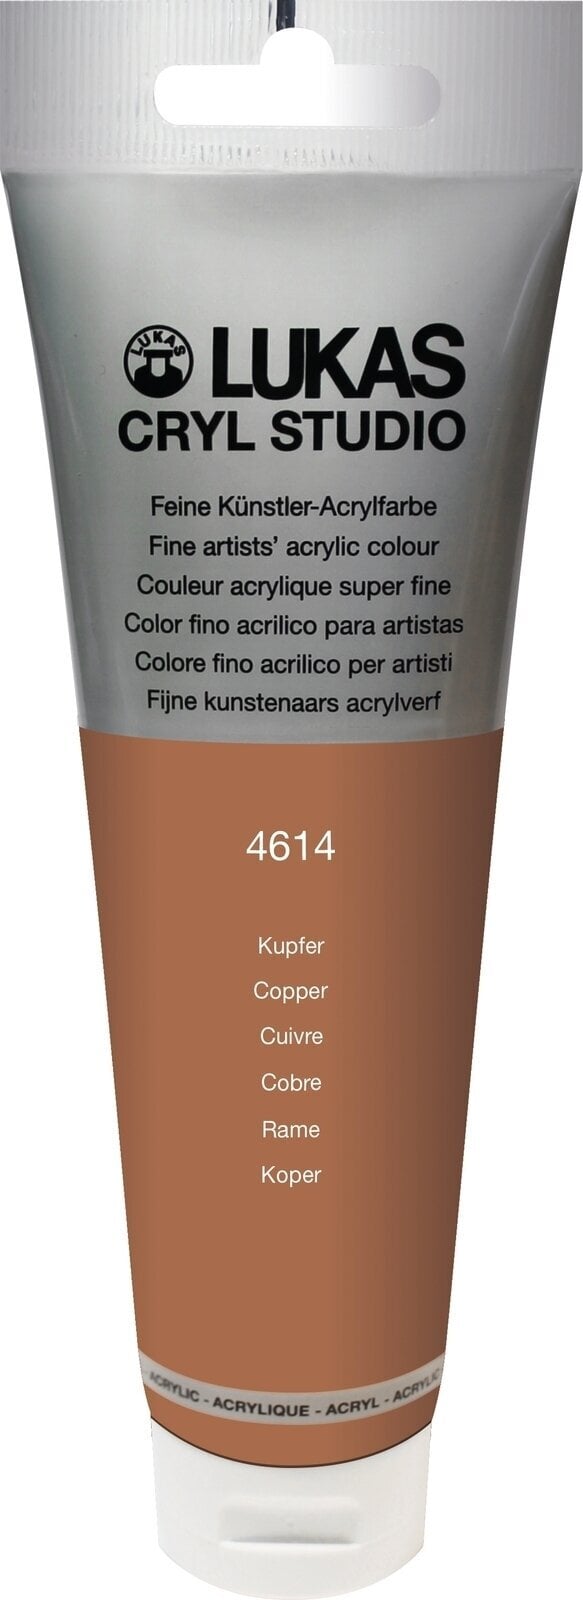 Akrylová barva Lukas Cryl Studio Akrylová barva 125 ml Měď